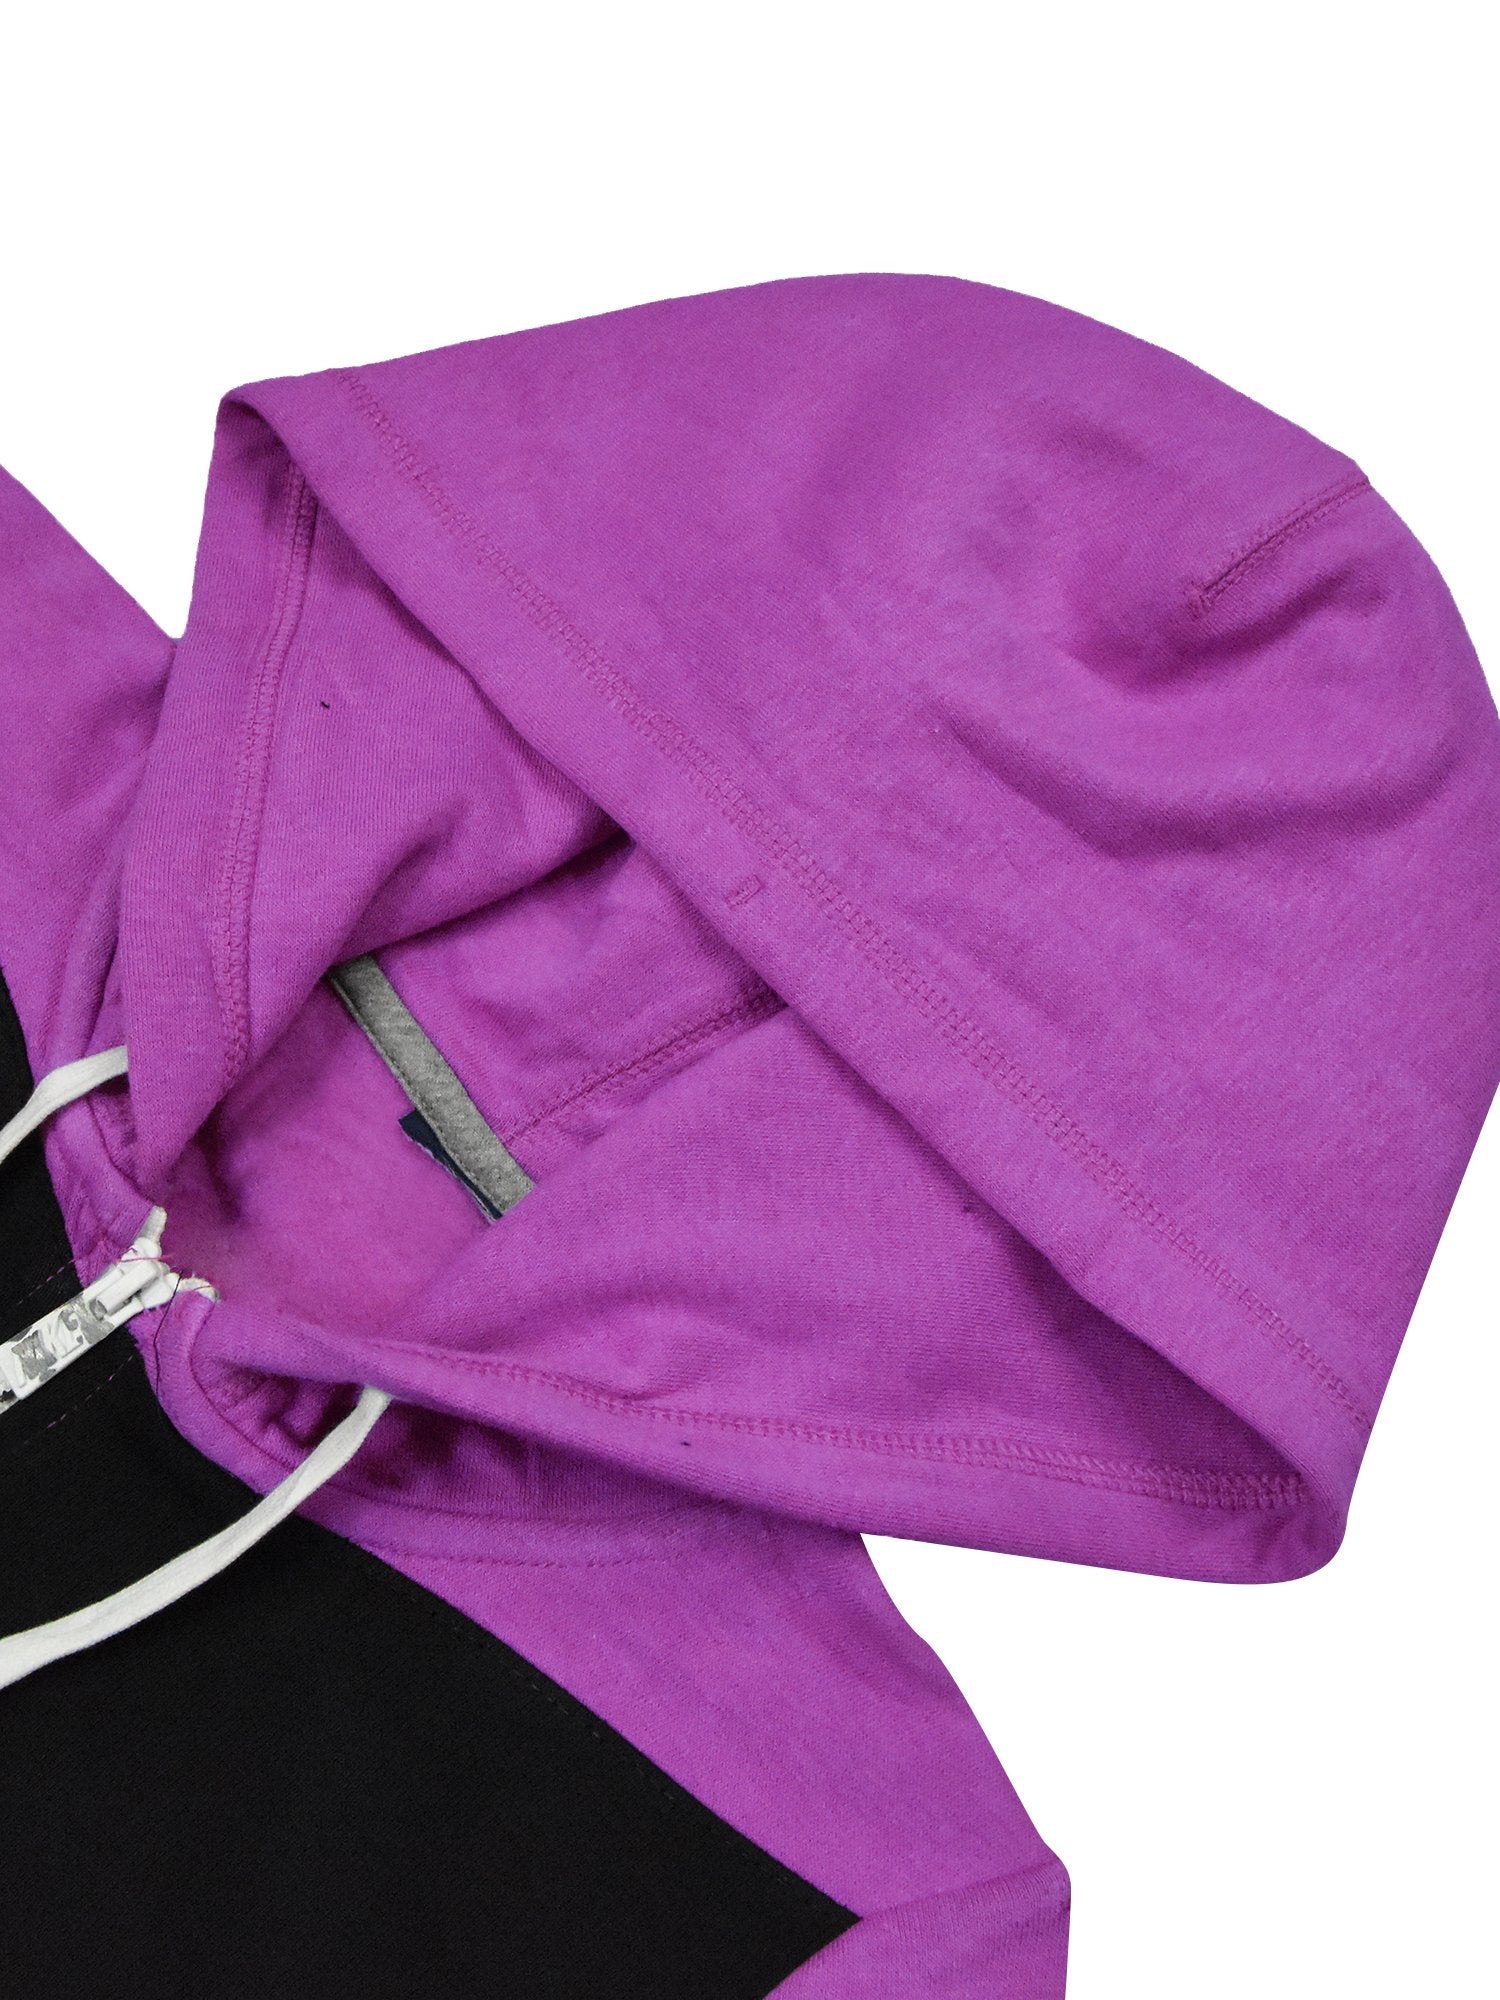 Next Fleece Zipper Hoodie For Men-Dark Magenta with Black Panel-BE15681/SP46